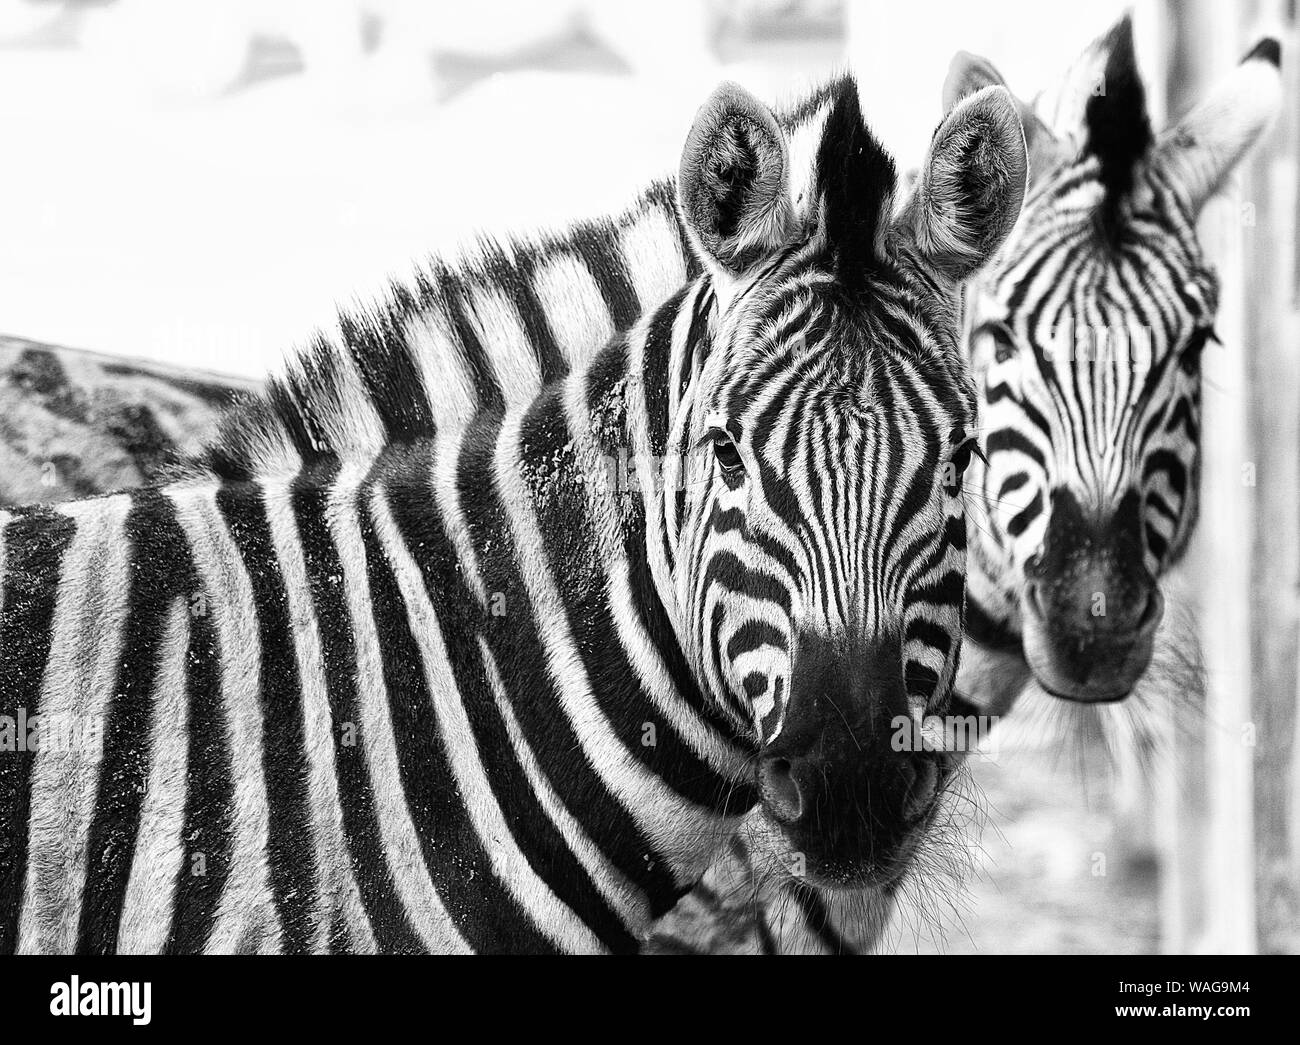 Zèbres (Equus) vraiment belle.des modèles dans la nature sont incroyables et les dessins en noir et blanc rayé de zèbres sont juste délicieux.Graphique & abstract. Banque D'Images